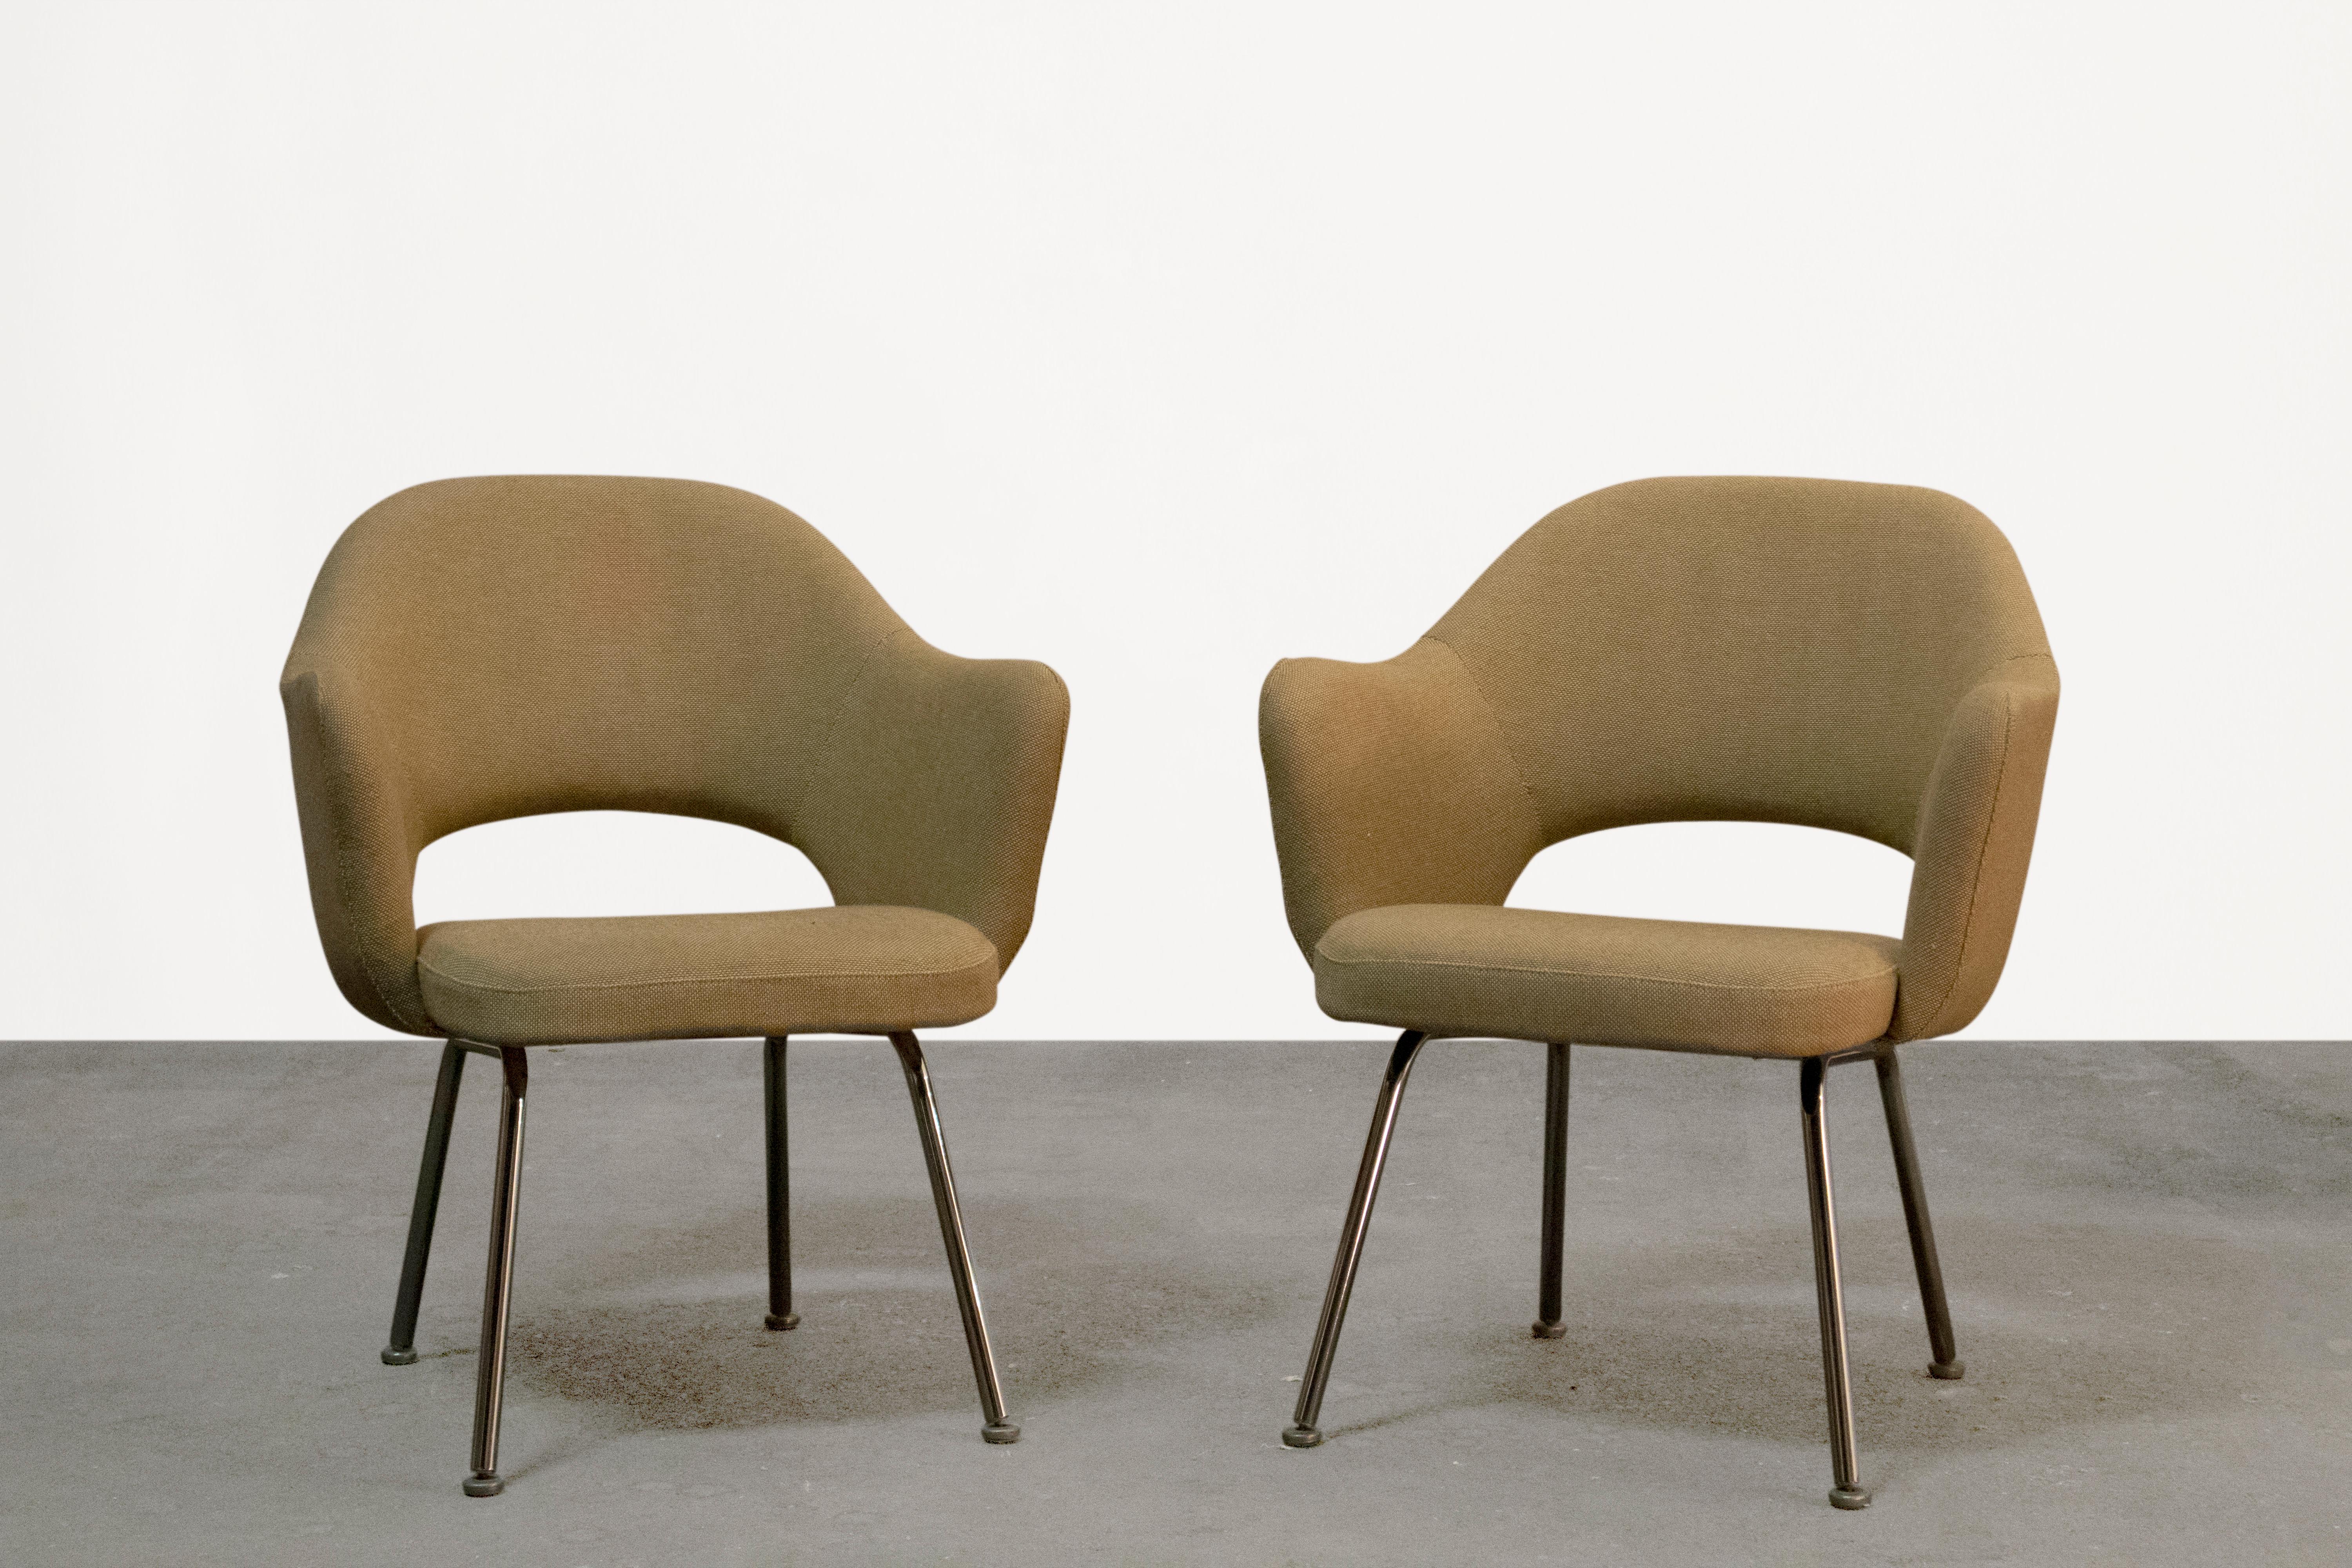 Améliorez votre espace avec cette paire intemporelle de fauteuils de direction modernes organiques du milieu du siècle, conçus par le célèbre designer Eero Saarinen pour Knoll. Ces chaises emblématiques sont dotées d'une base classique à 4 pieds en